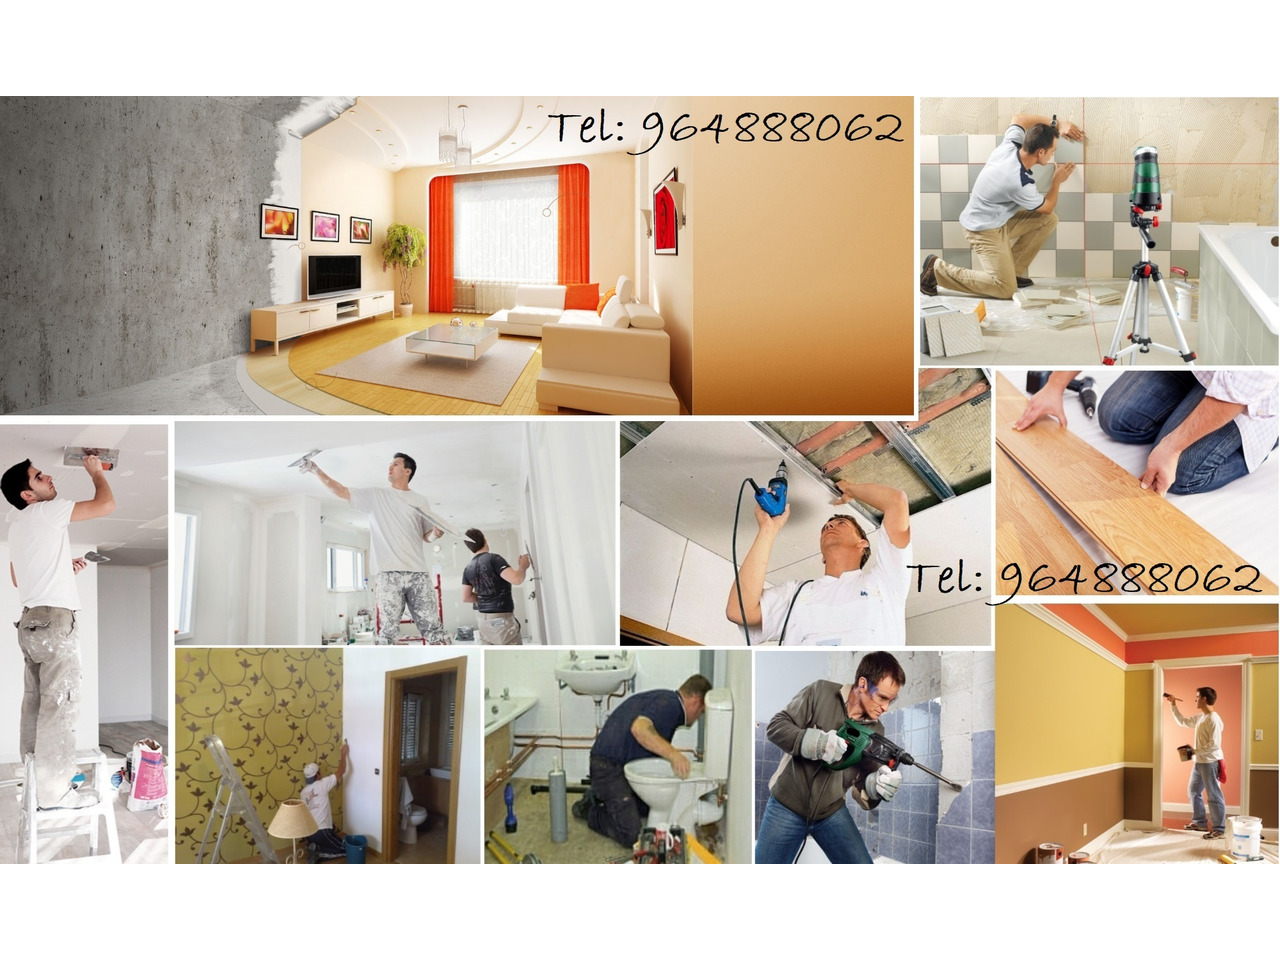 Renovação – Remodelação Apartamentos, desde 100€/m2 - 1